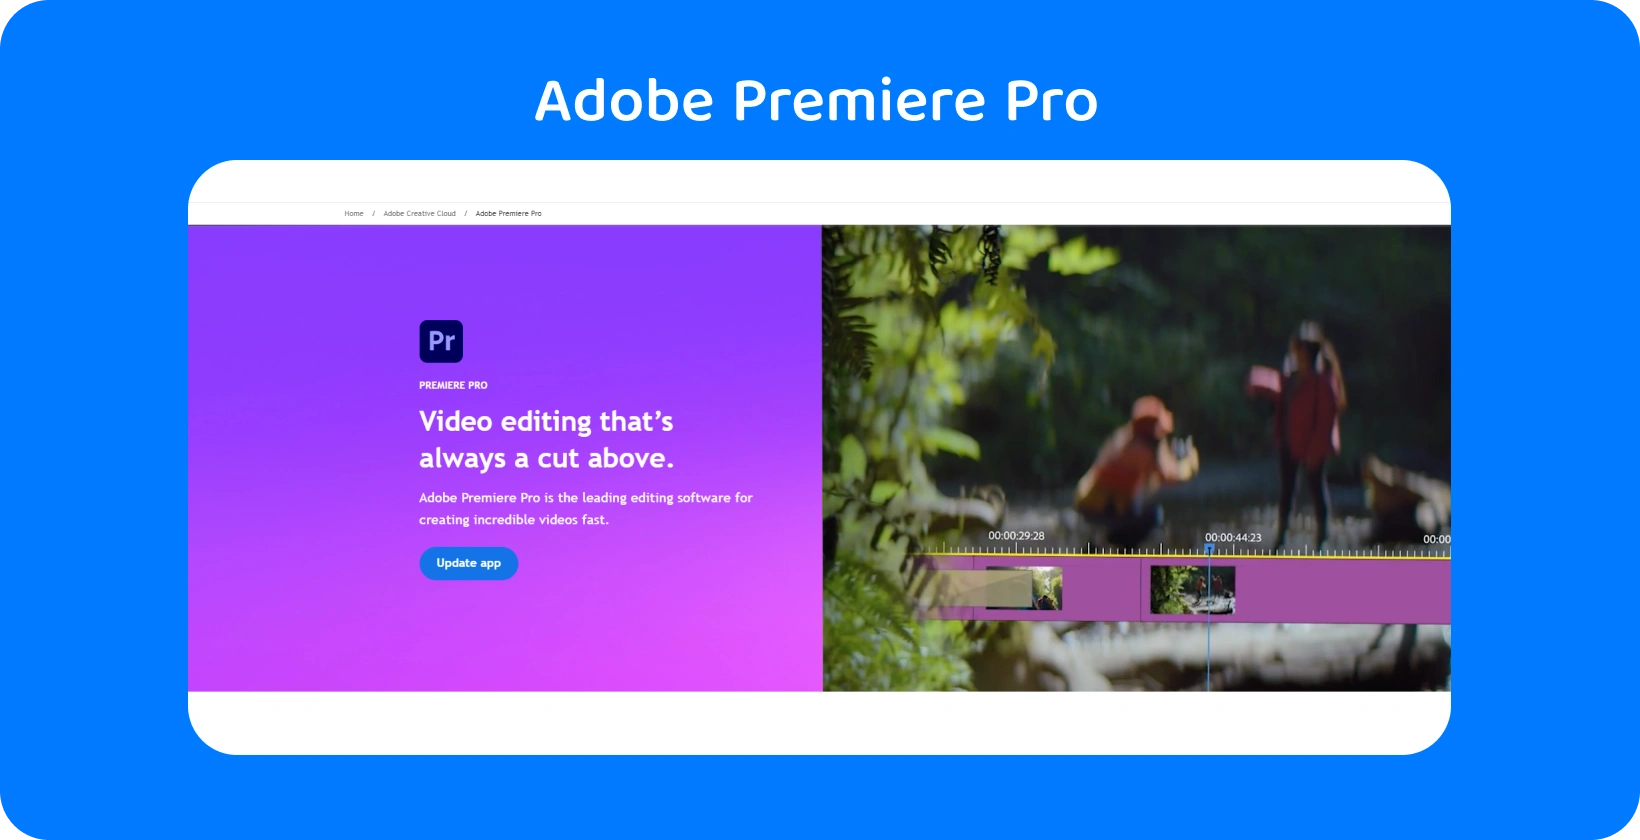 Adobe Premiere Pro grensesnitt som viser sine avanserte videoredigeringsfunksjoner, ideelt for raske, presise redigeringer.